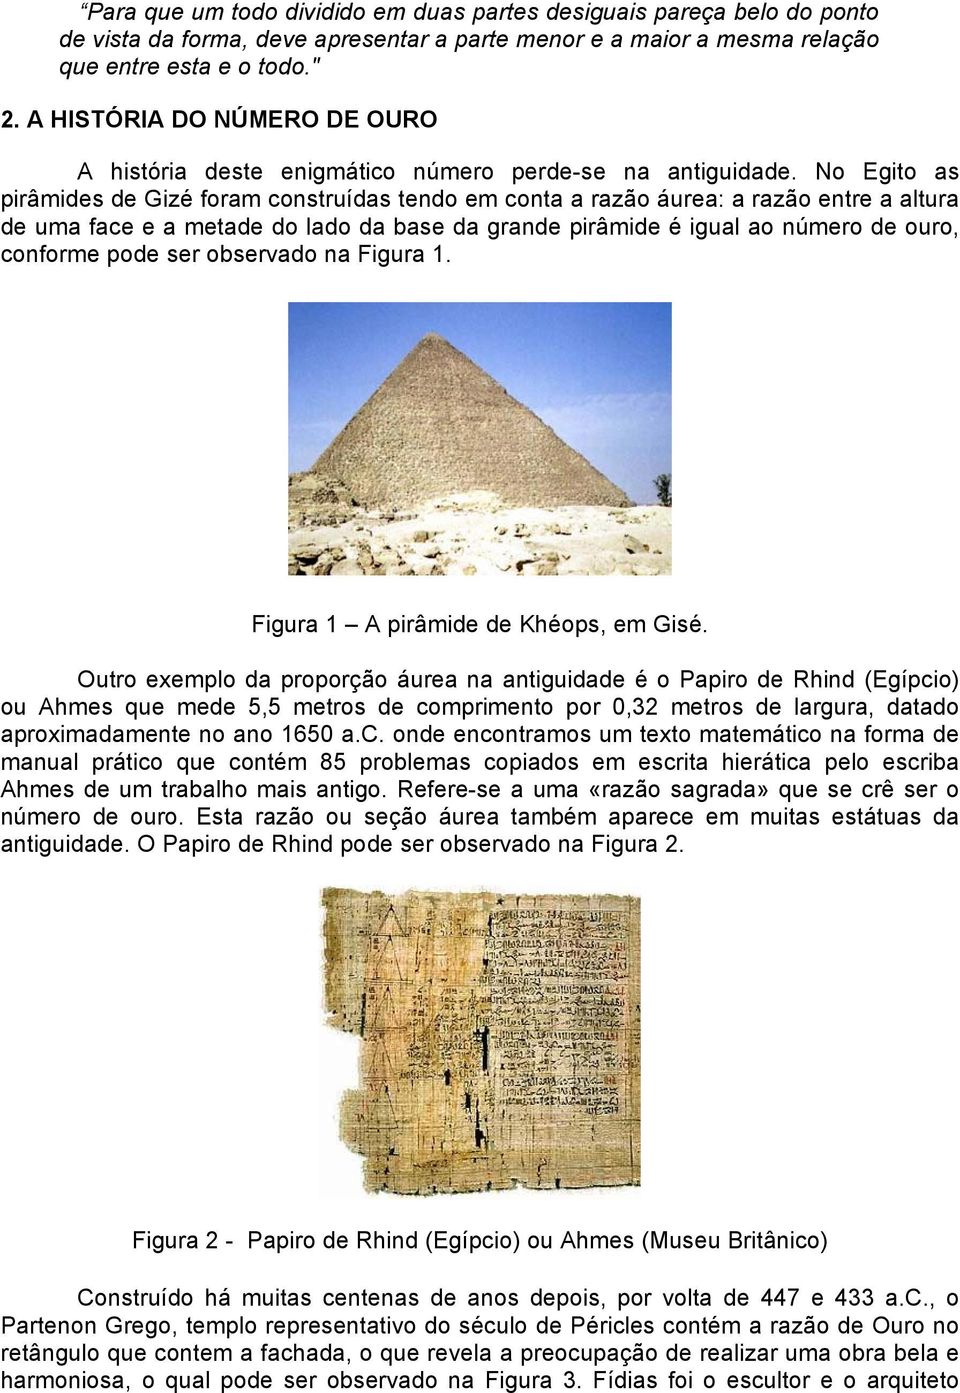 No Egito as pirâmides de Gizé foram construídas tendo em conta a razão áurea: a razão entre a altura de uma face e a metade do lado da base da grande pirâmide é igual ao número de ouro, conforme pode